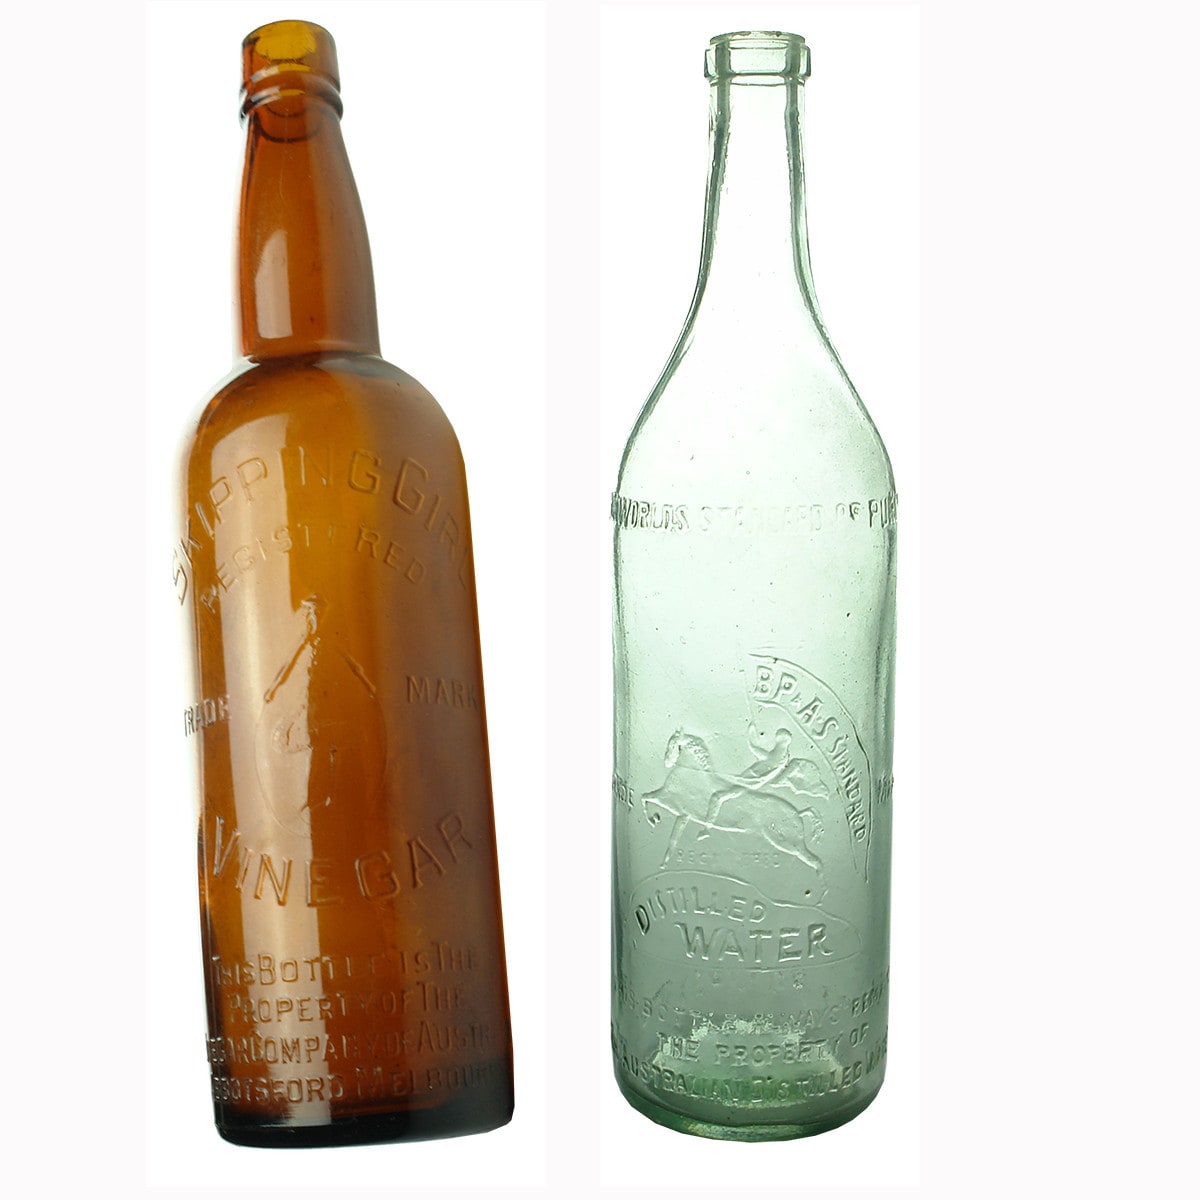 Two bottles: Skipping Girl Vinegar and Australian Distilled Water.